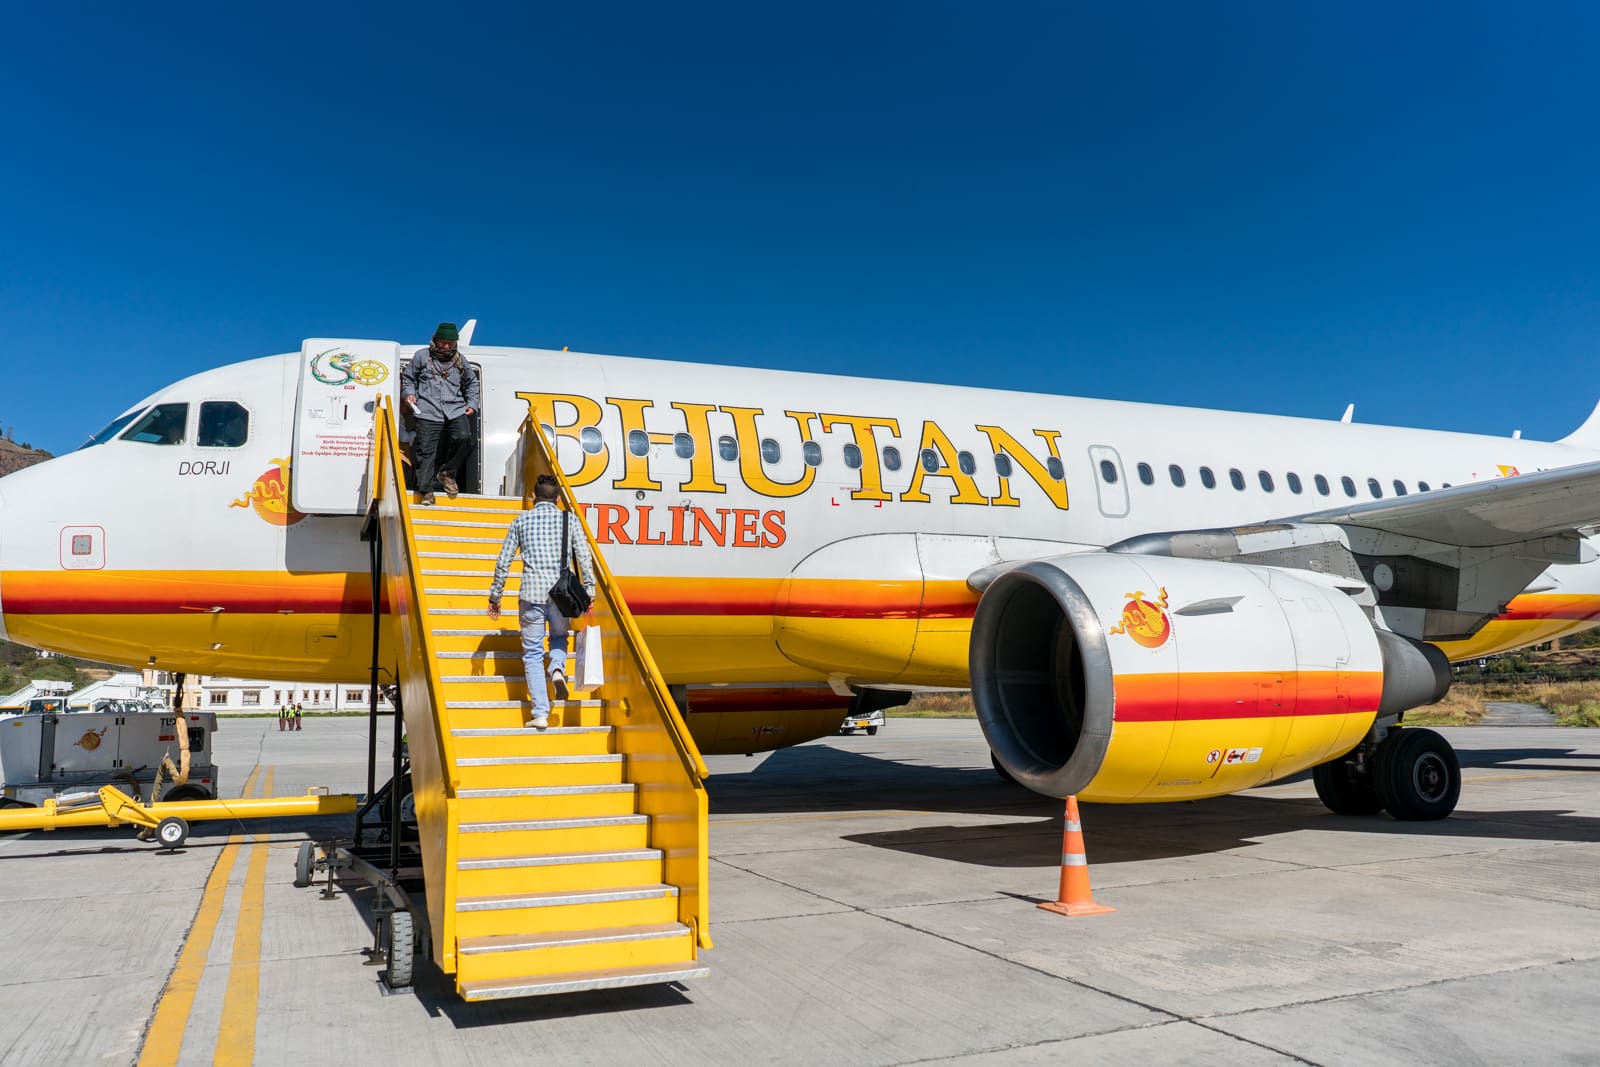 Bhutan airlines plane in Paro